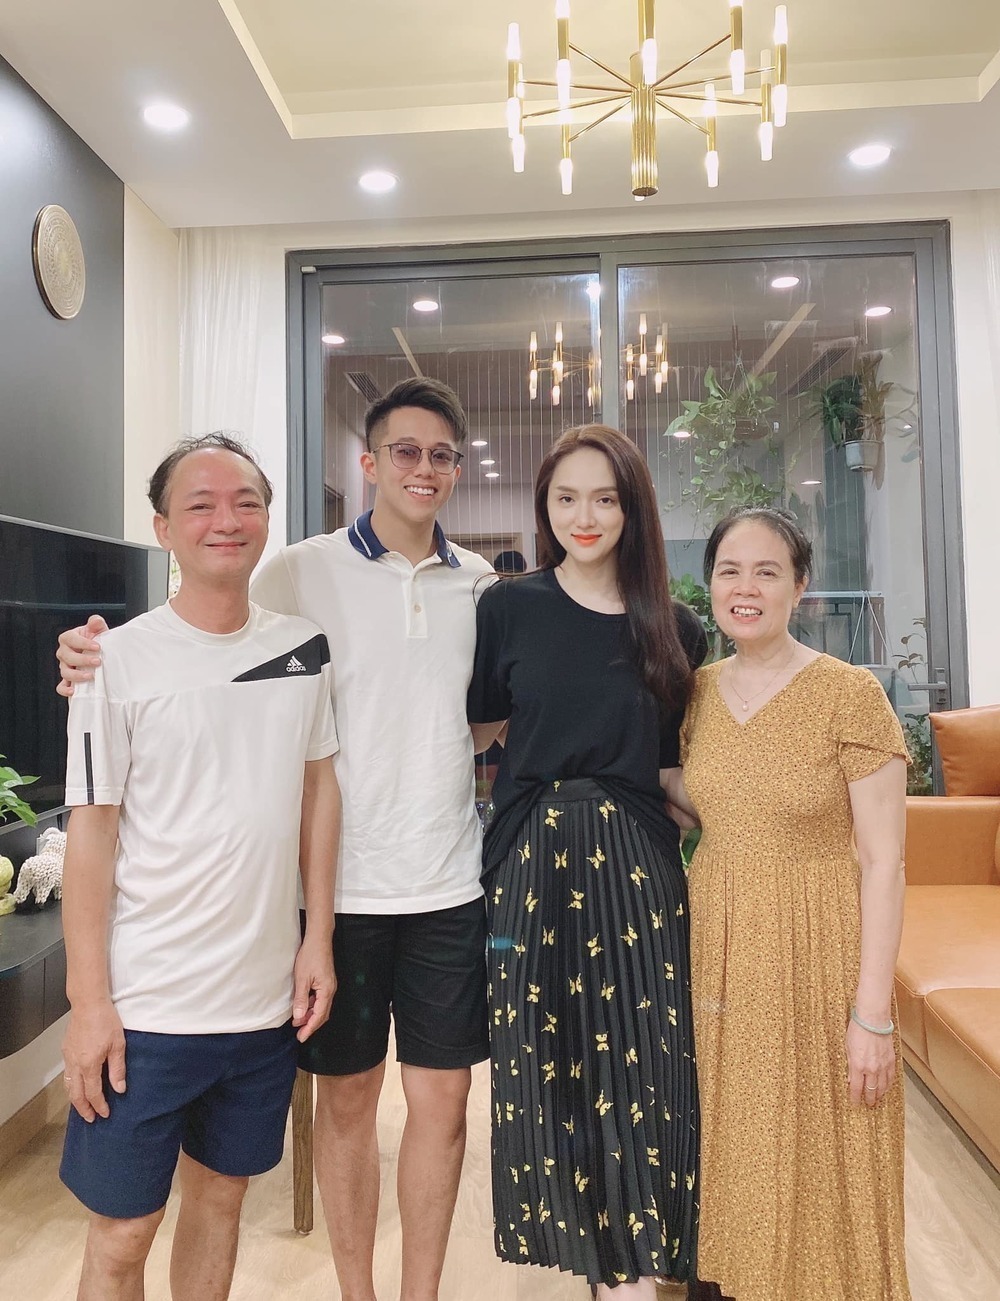  
Matt Liu từng có mặt ở Hà Nội, đến tận nhà để ra mắt bố mẹ của bạn gái. - Tin sao Viet - Tin tuc sao Viet - Scandal sao Viet - Tin tuc cua Sao - Tin cua Sao